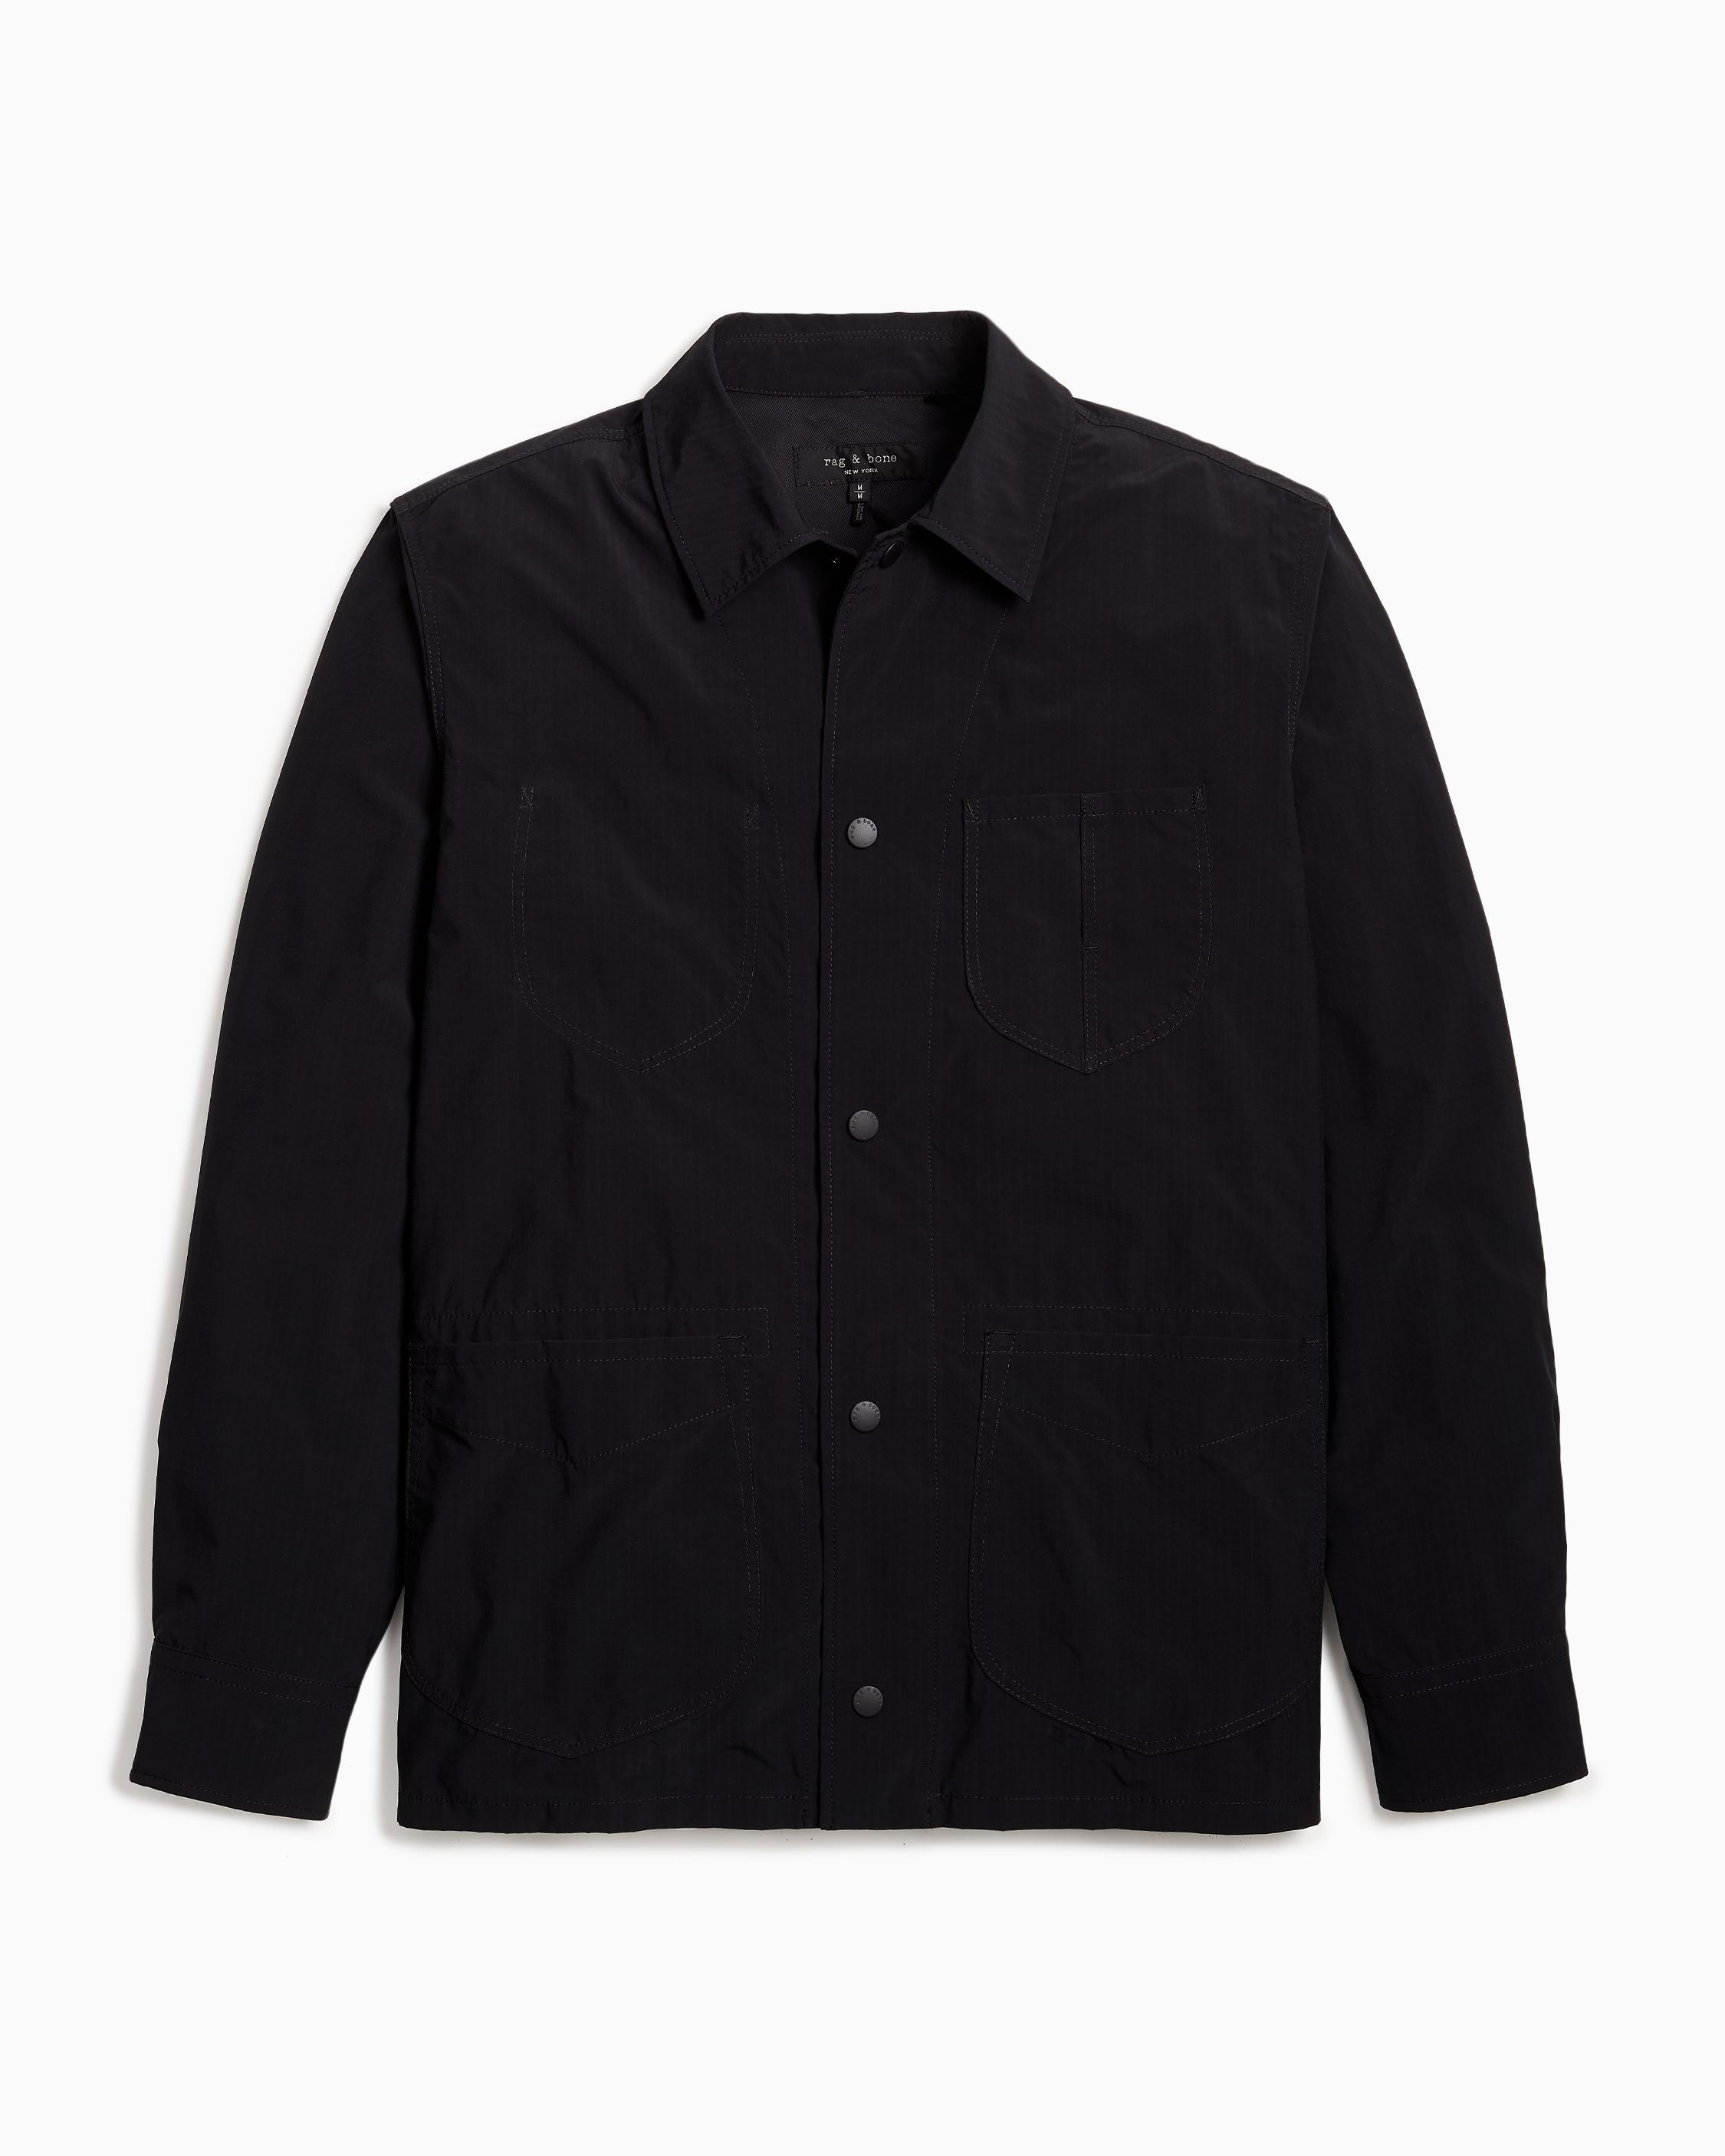 Mace Shirt Jacket - Nylon Blend